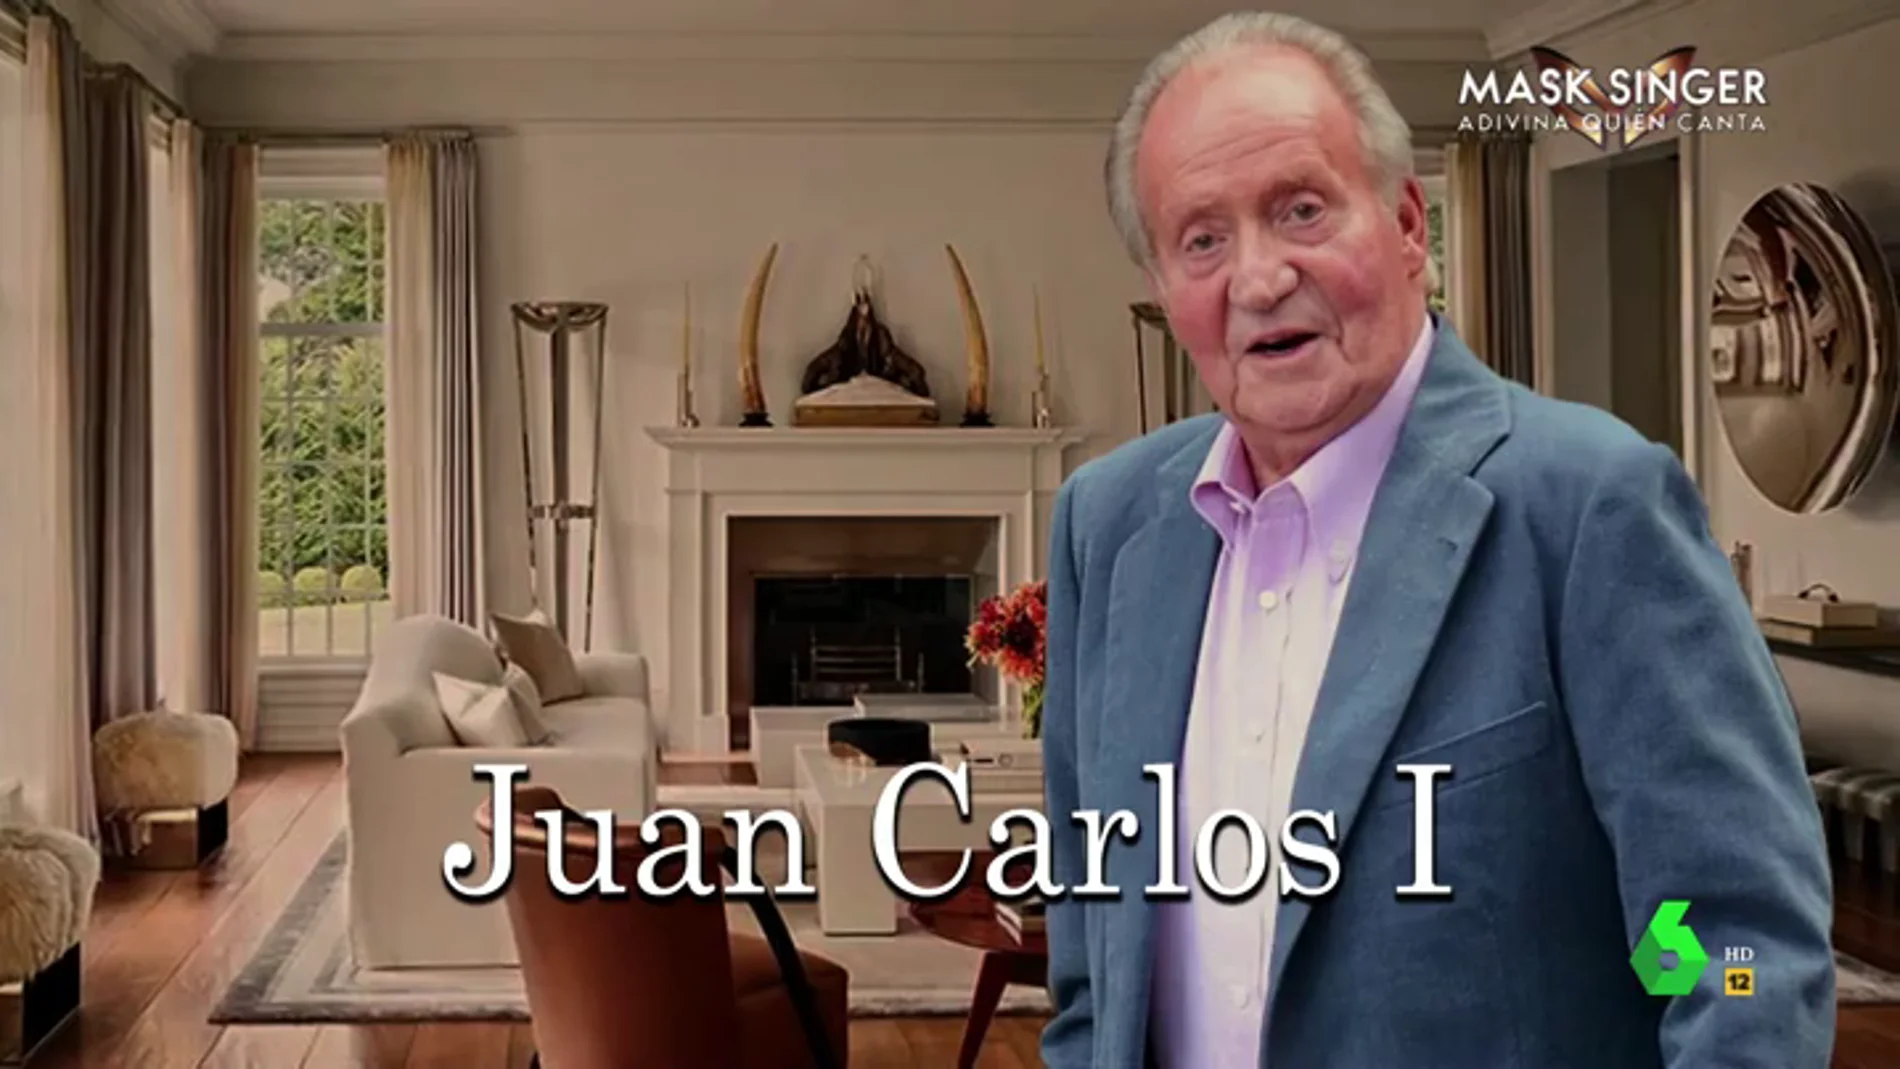 'Amarte así Juan Carlitos', la telenovela de Wyoming sobre el rey emérito: "¿Cuál será el siguiente giro, un hijo secreto?"